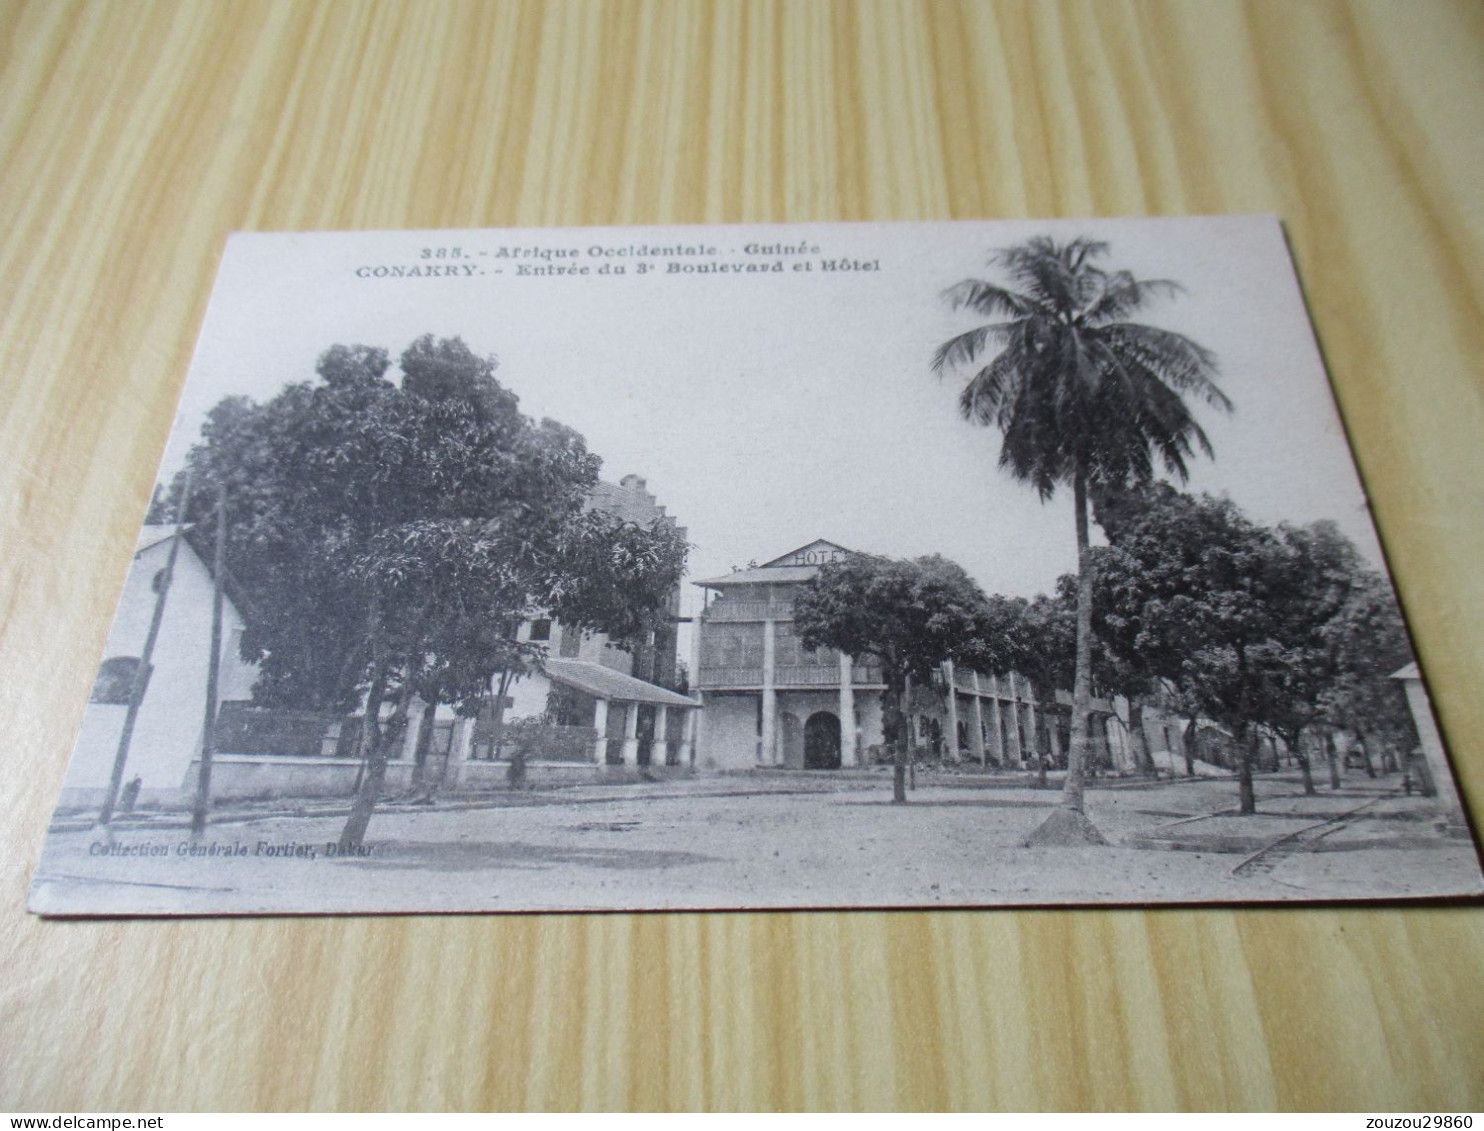 CPA Conakry (Guinée).Entrée Du 3e Boulevard Et Hôtel. - Guinea